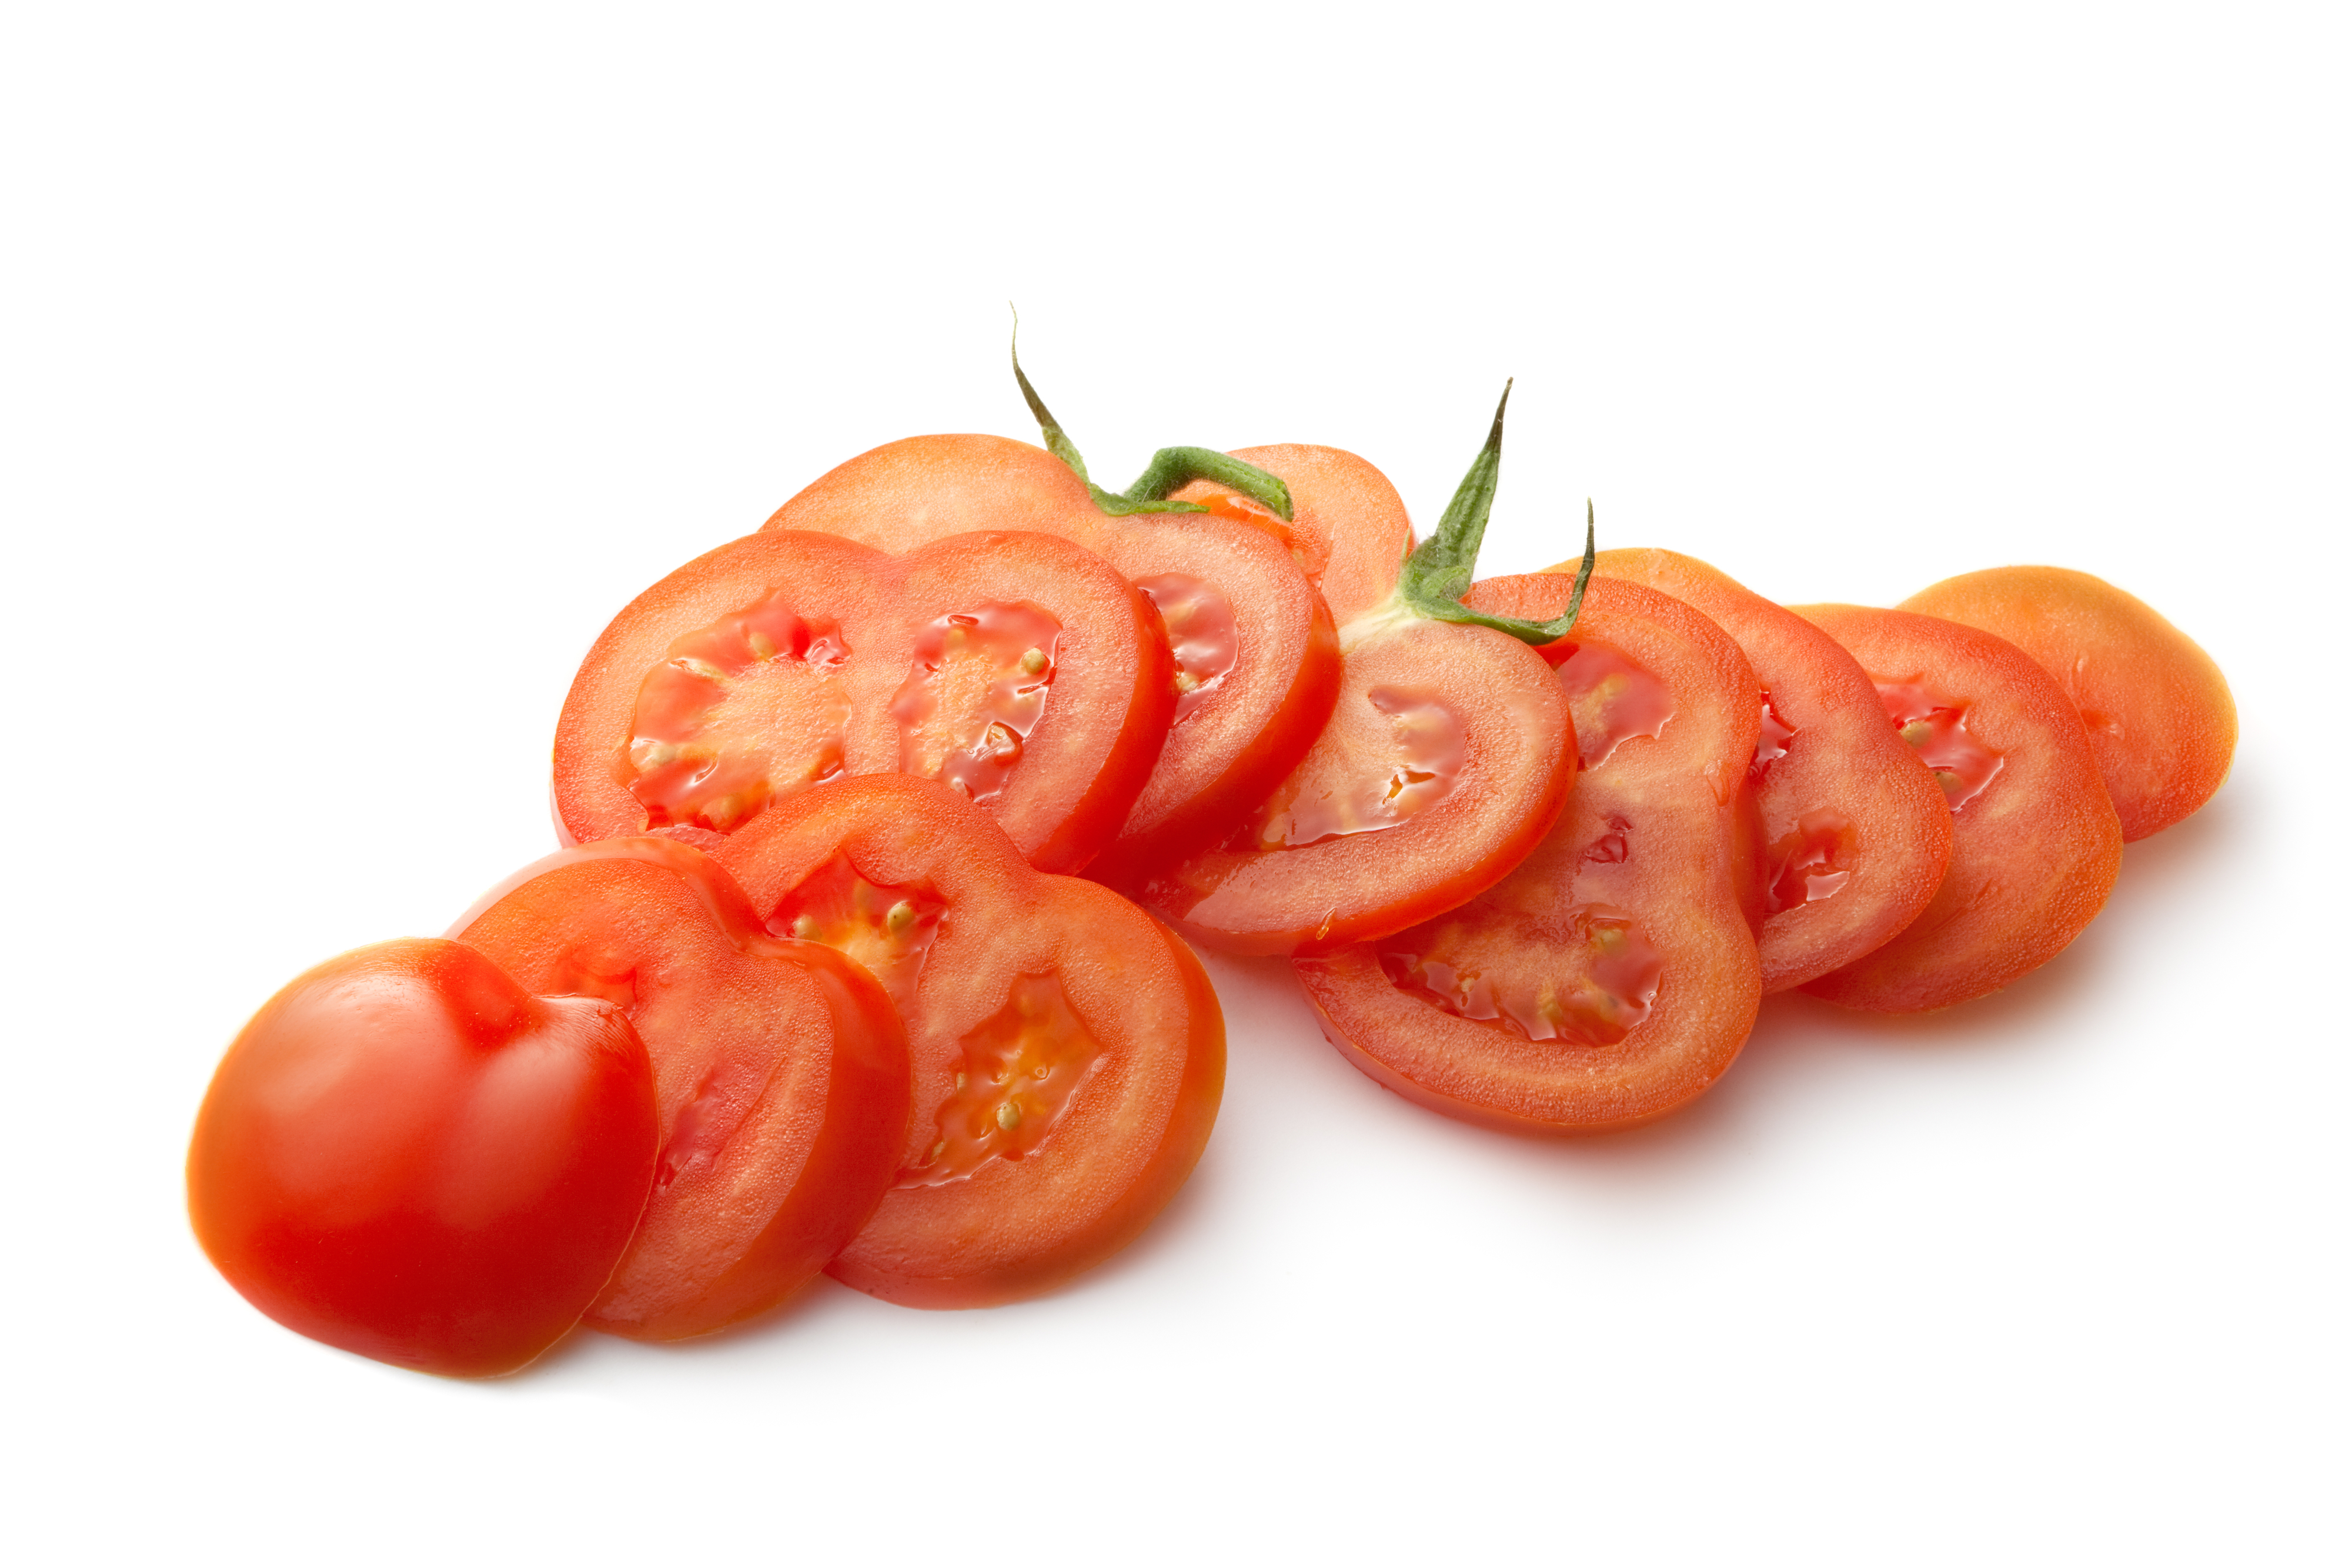 tomato cut into slices